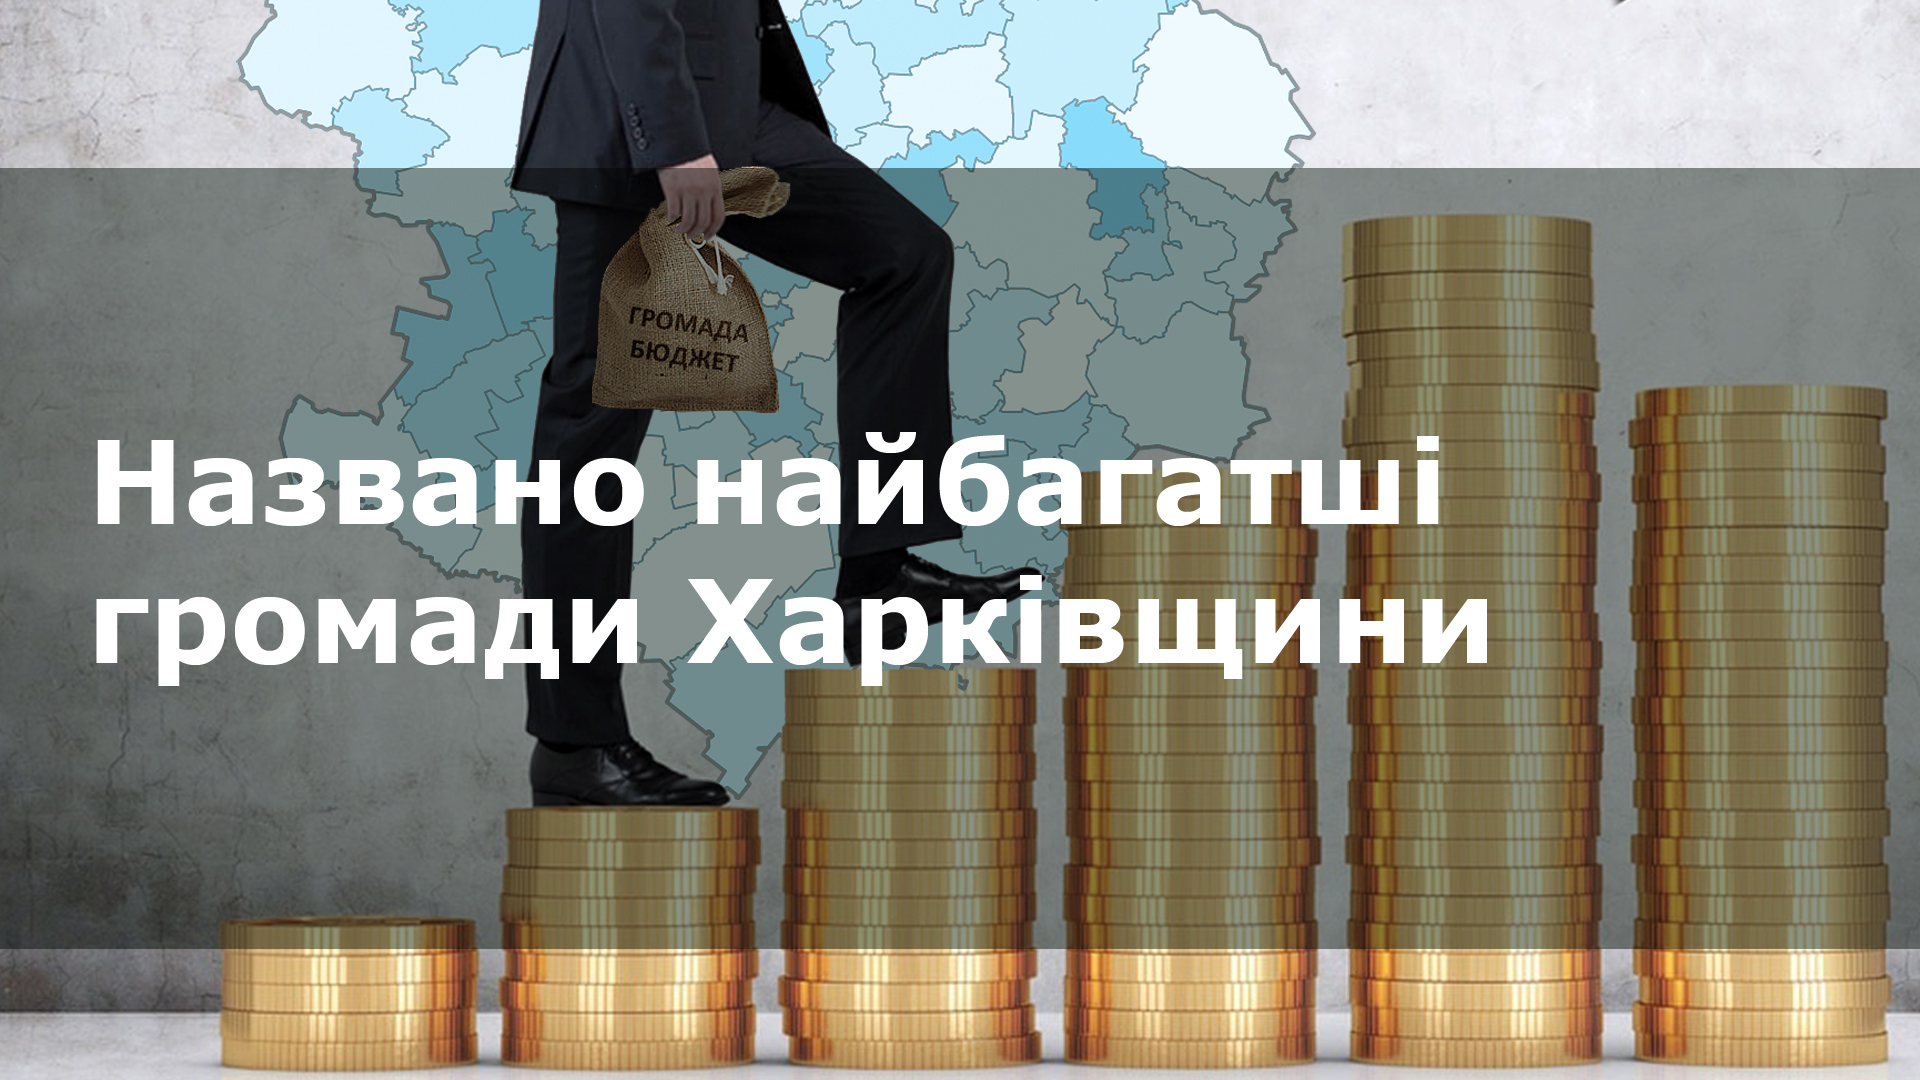 Найбагатші громади Харківщини